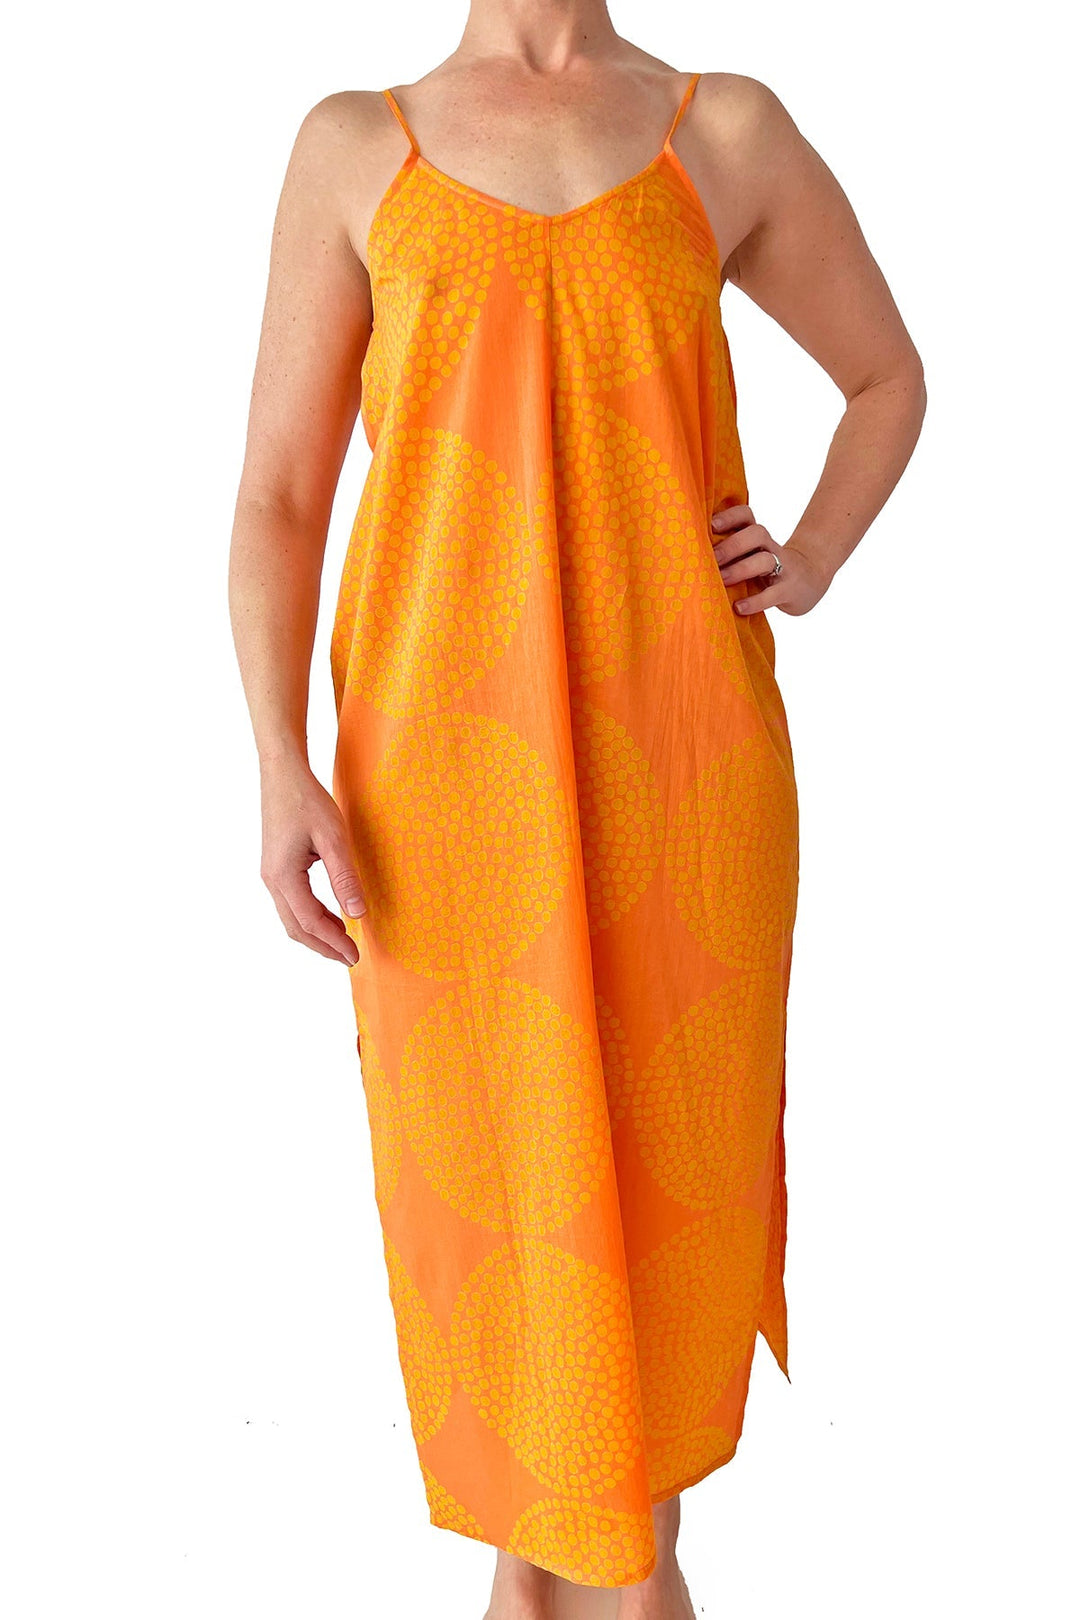 Summer Cotton Slip Dress: Big Wheels Orange